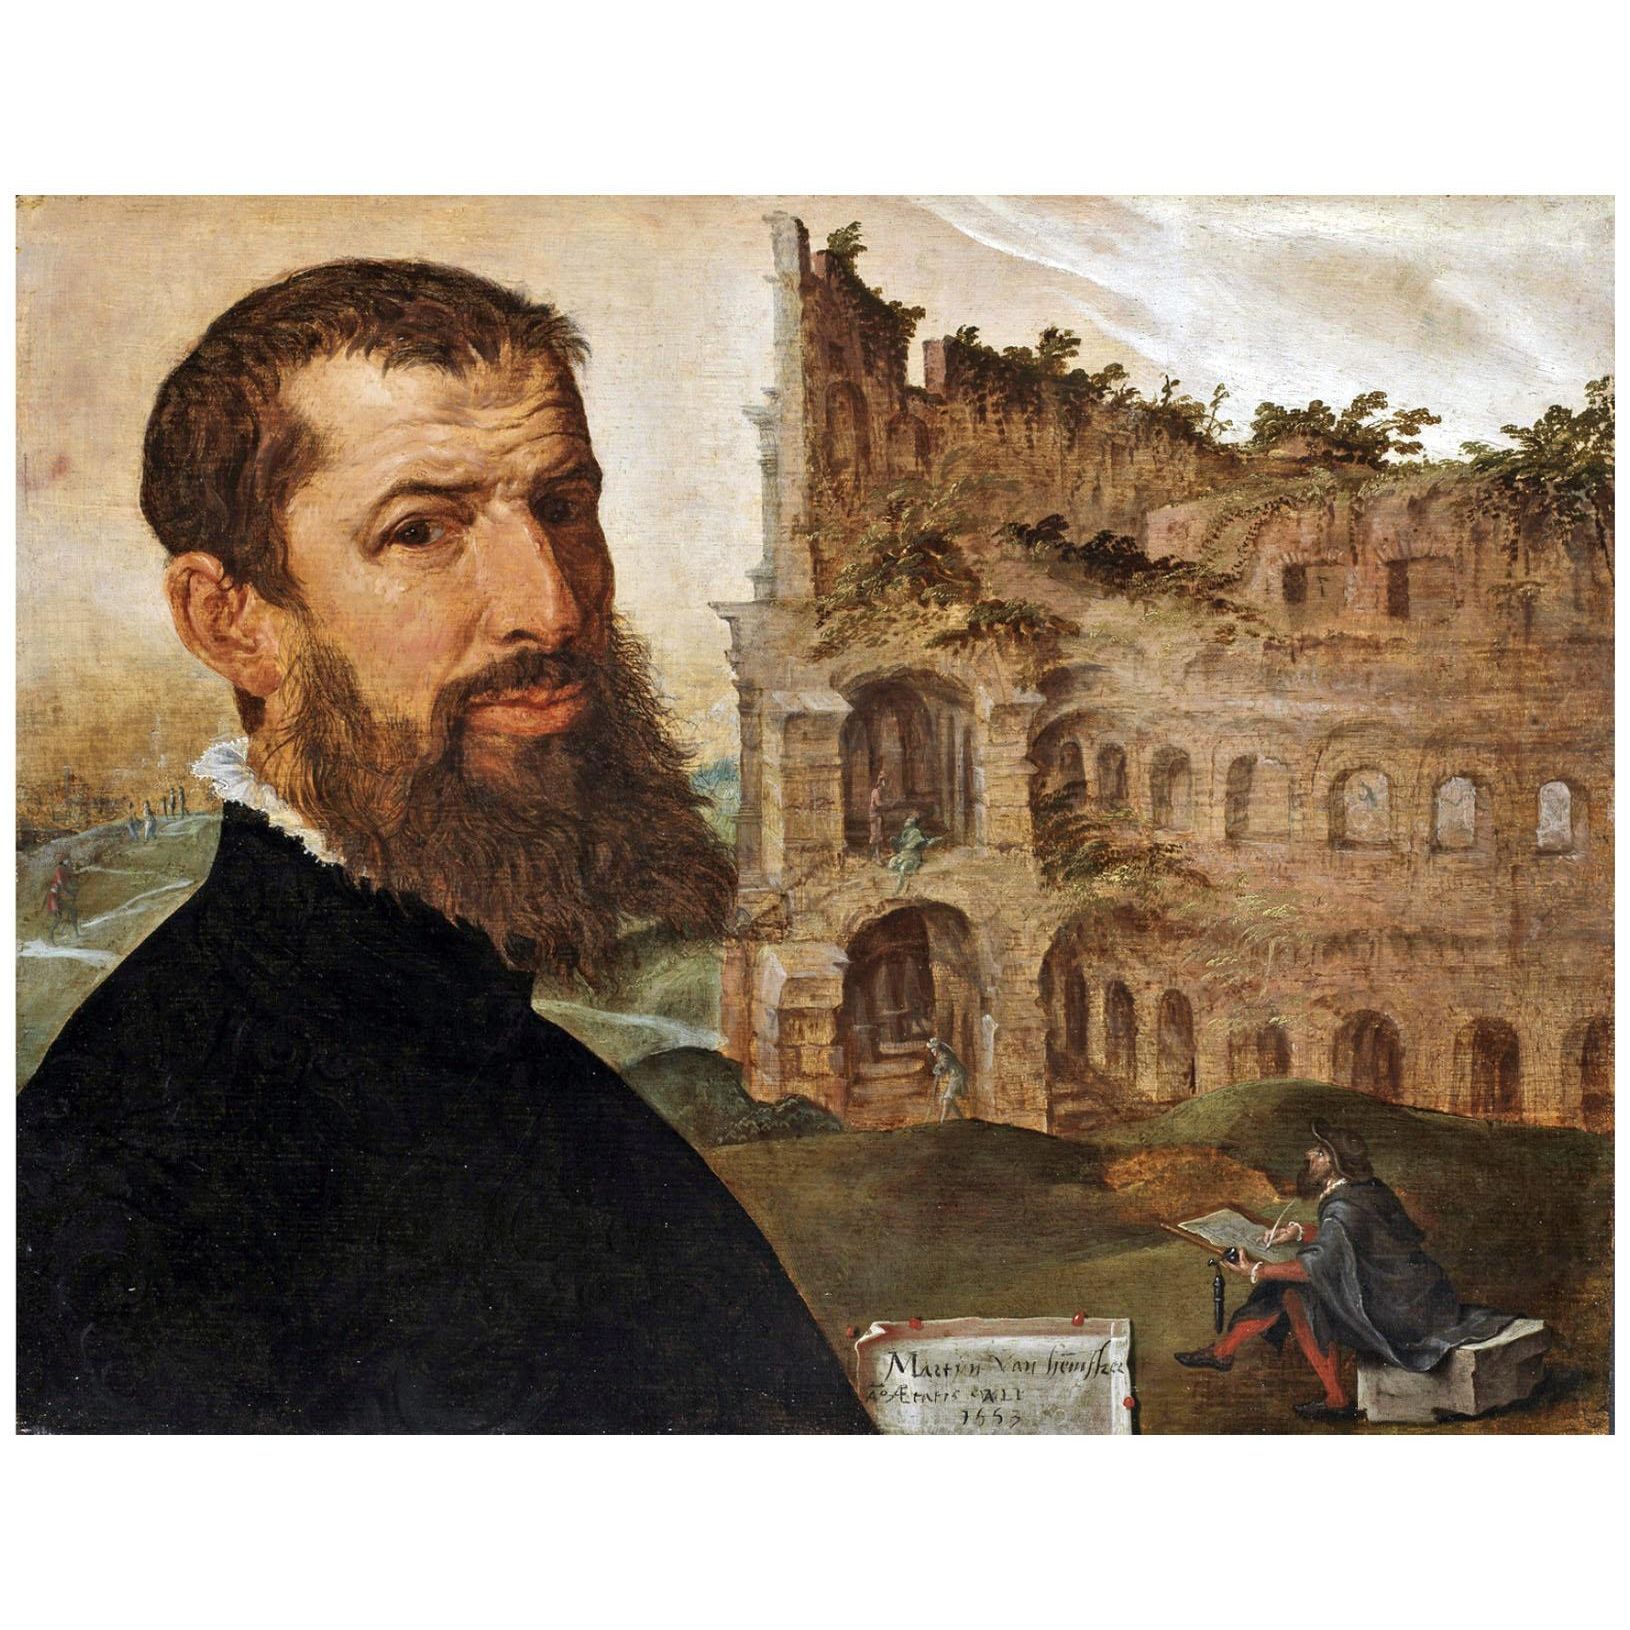 Maarten van Heemskerck. Self-portrait. 1553. Fritzwilliam Museum Cambridge